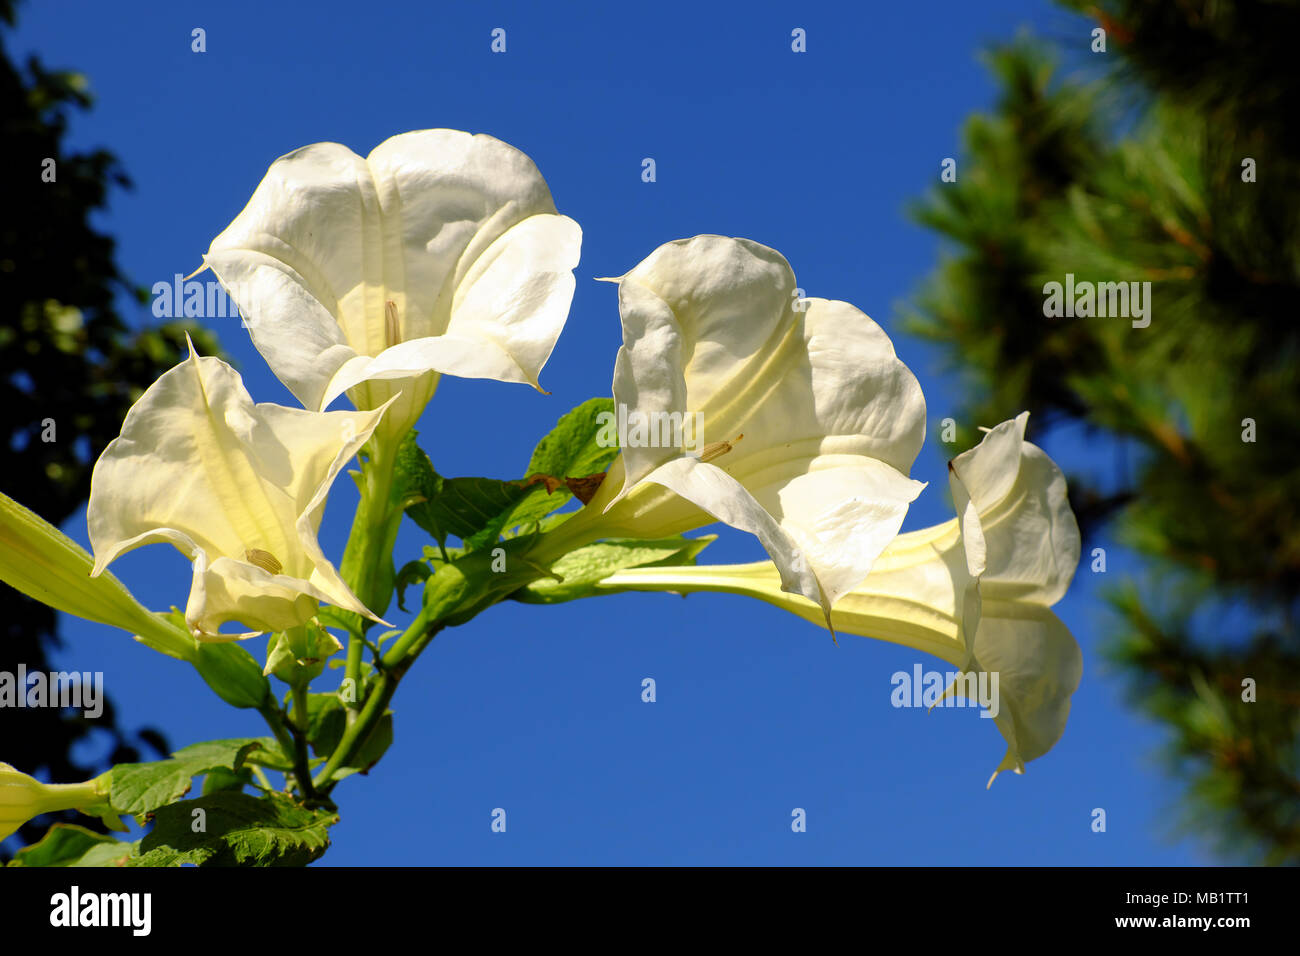 Weiße Lilie Blume, einem beliebten urban Baum als dekorative Pflanze mit Trompete Form in der Stadt Da Lat, diese Pflanze sehr giftig, giftig und gefährlich, weiß B Stockfoto